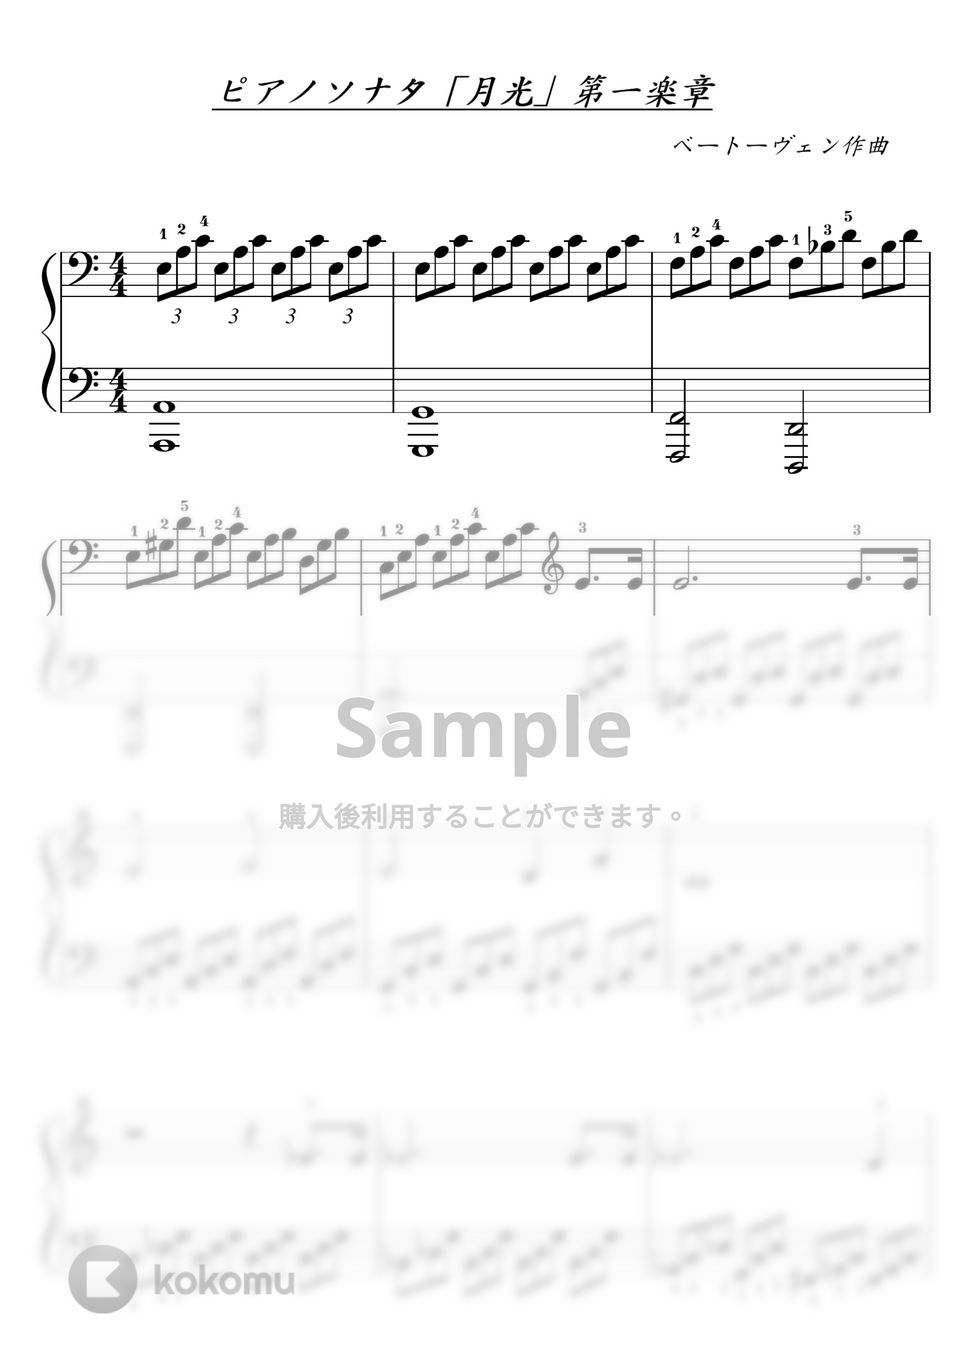 ベートーヴェン - 【初級】月光ソナタ/月光の曲 by ピアノのせんせいの楽譜集